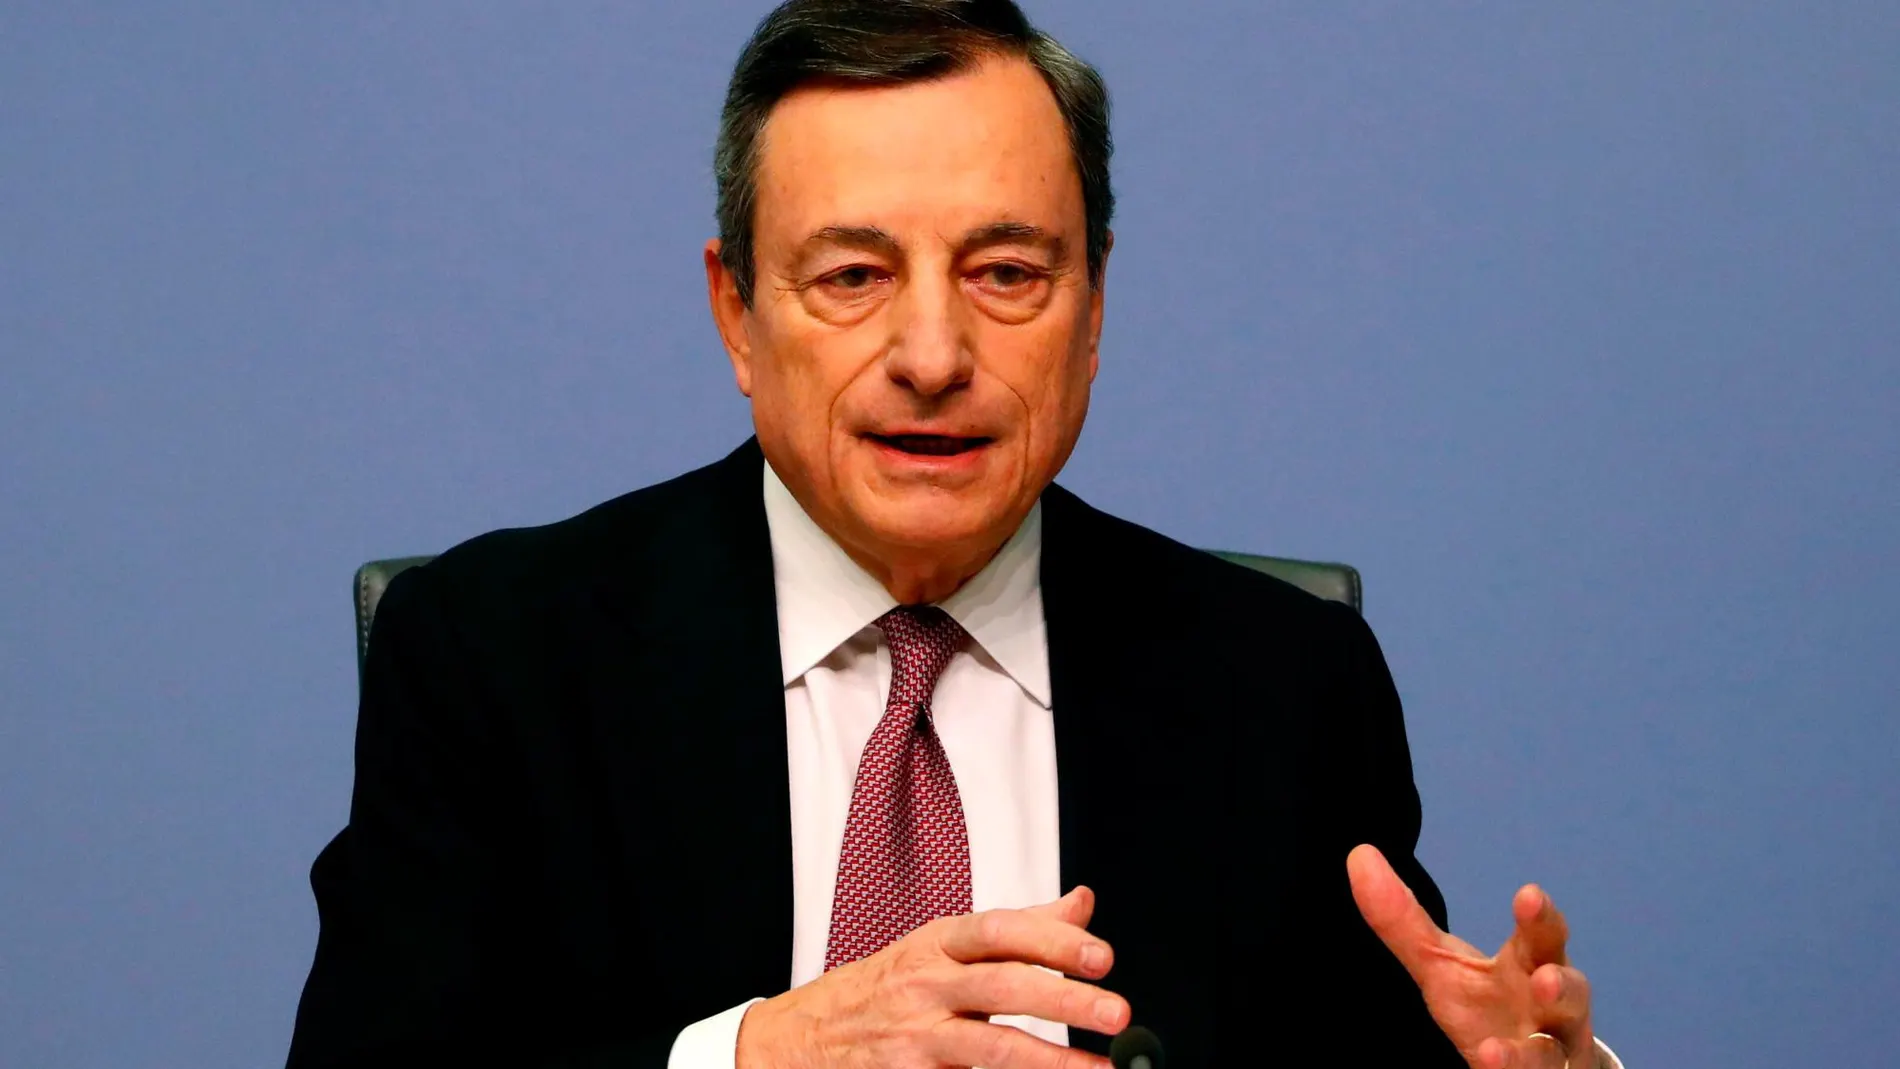 El presidente del Banco Central Europeo Mario Draghi en la conferencia en Frankfurt